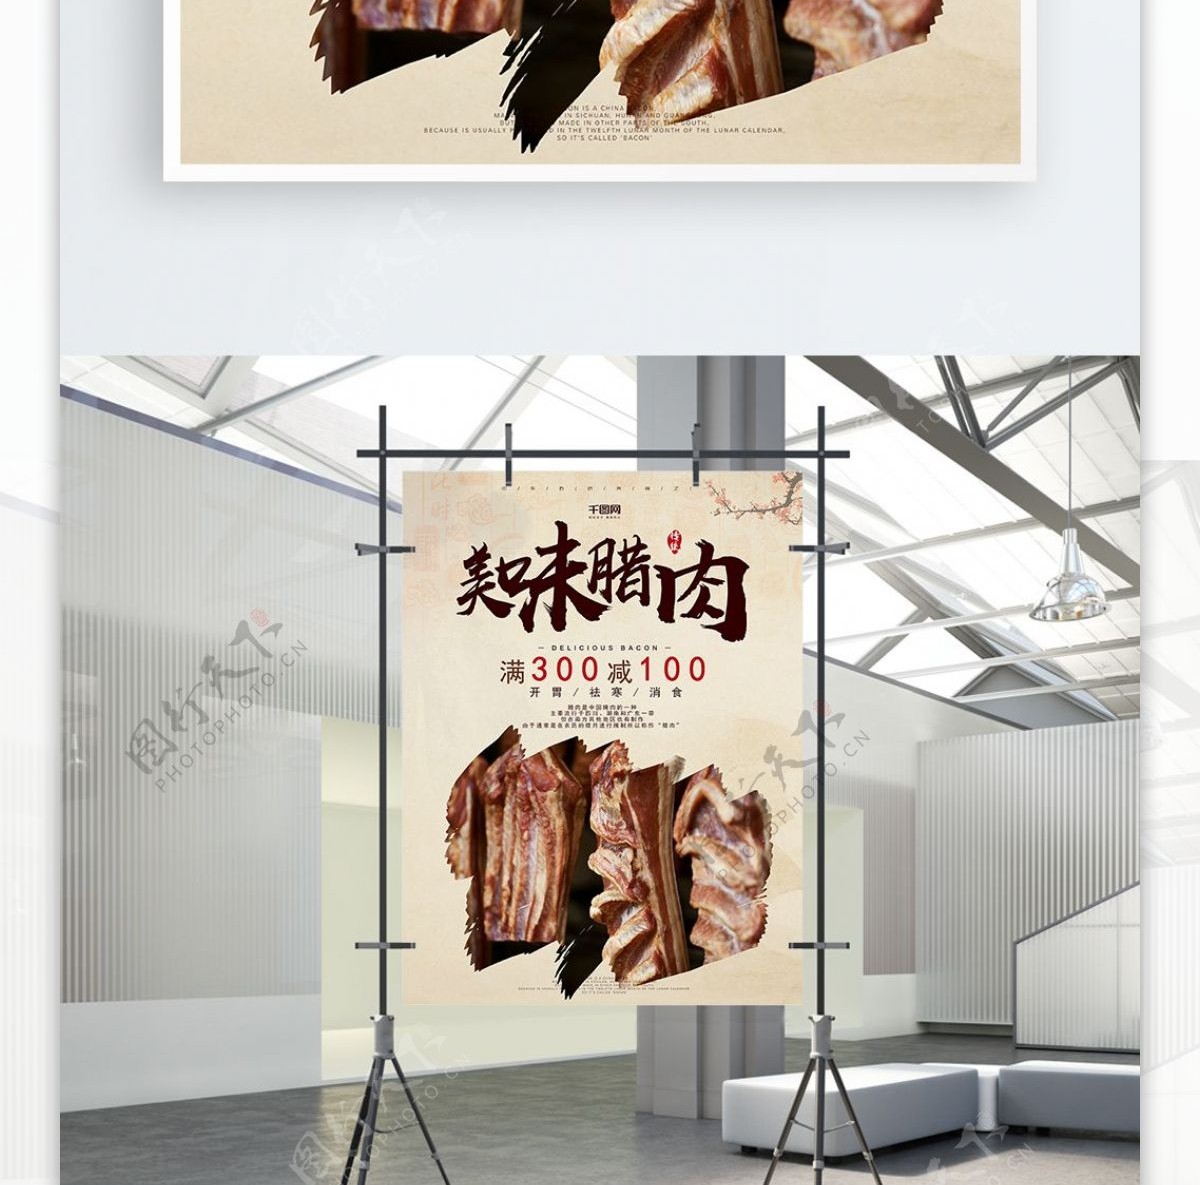 中华传统美食美味腊肉背景海报